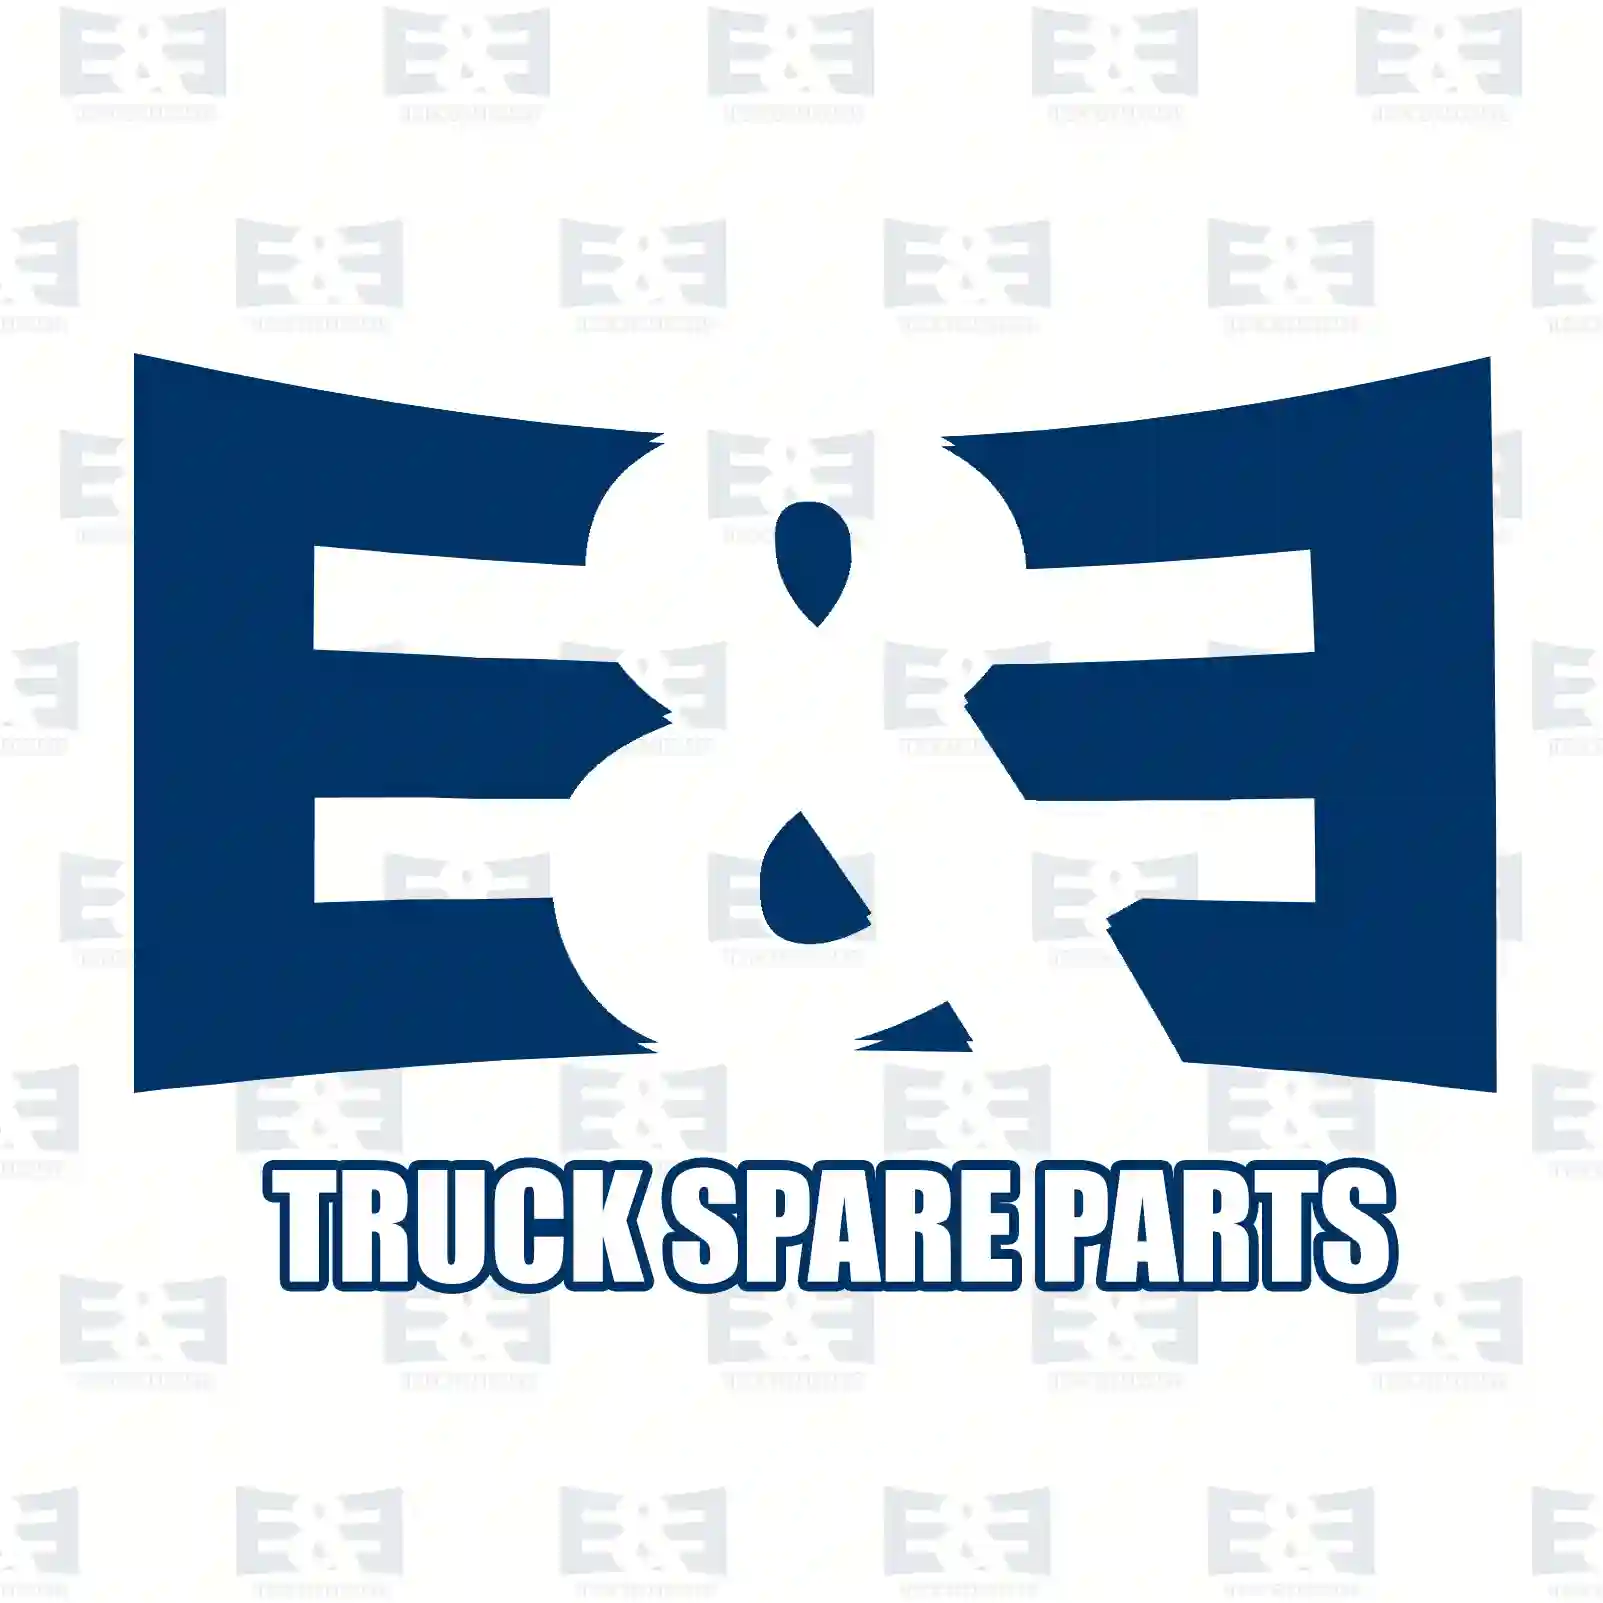 Brake disc, 2E2294878, 5000396612, , , , , , , , ||  2E2294878 E&E Truck Spare Parts | Truck Spare Parts, Auotomotive Spare Parts Brake disc, 2E2294878, 5000396612, , , , , , , , ||  2E2294878 E&E Truck Spare Parts | Truck Spare Parts, Auotomotive Spare Parts